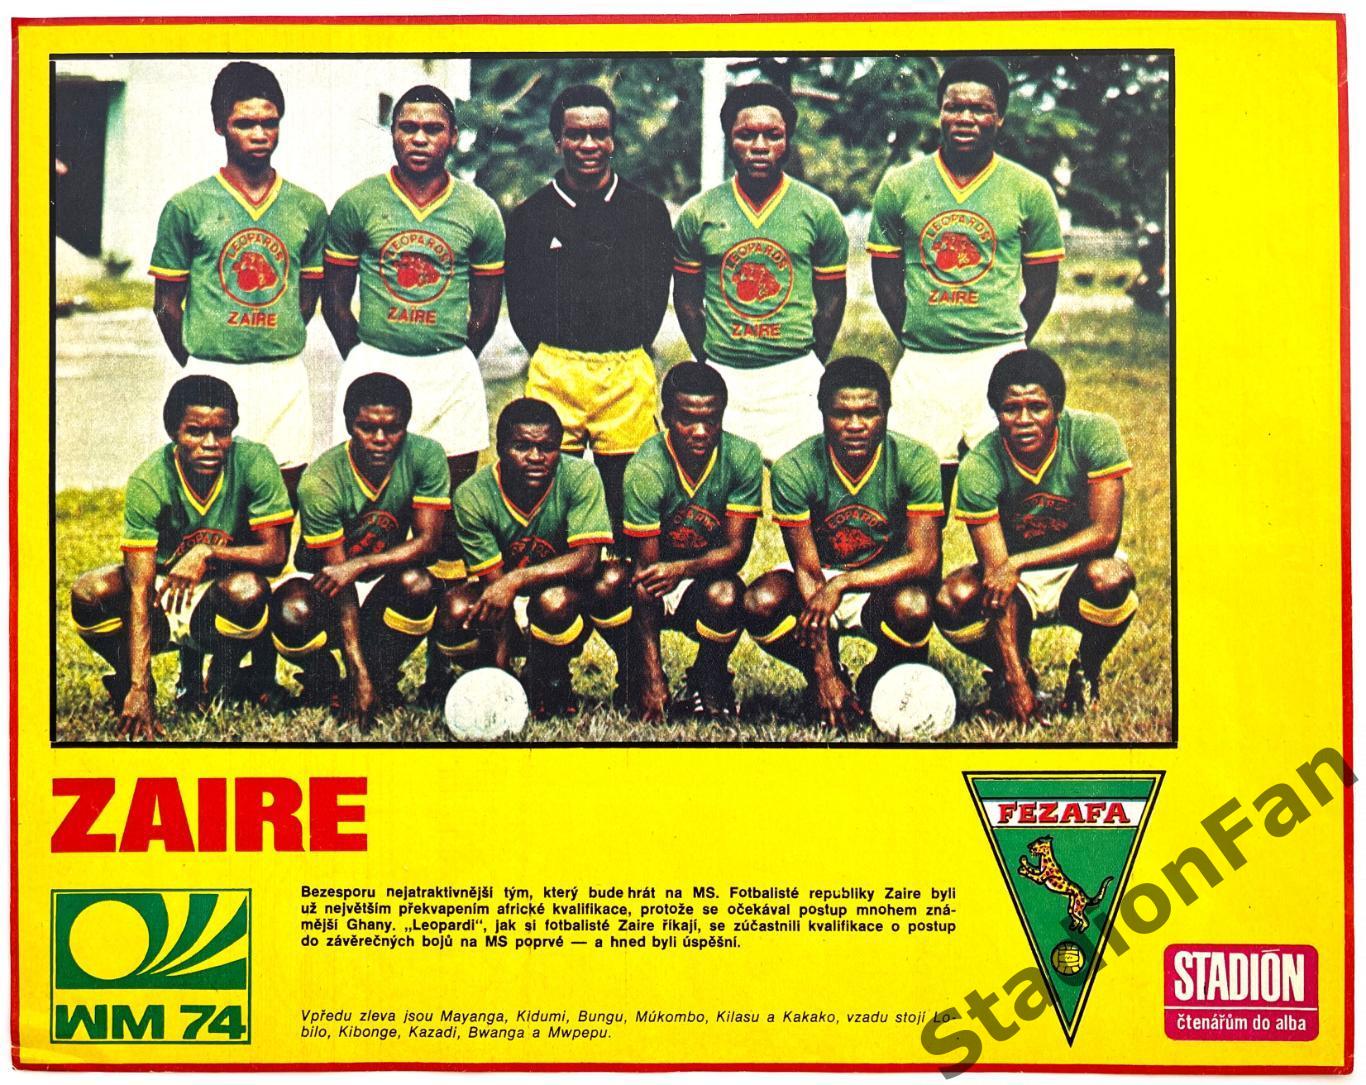 Постер из журнала Стадион (Stadion) - Zaire, 1974